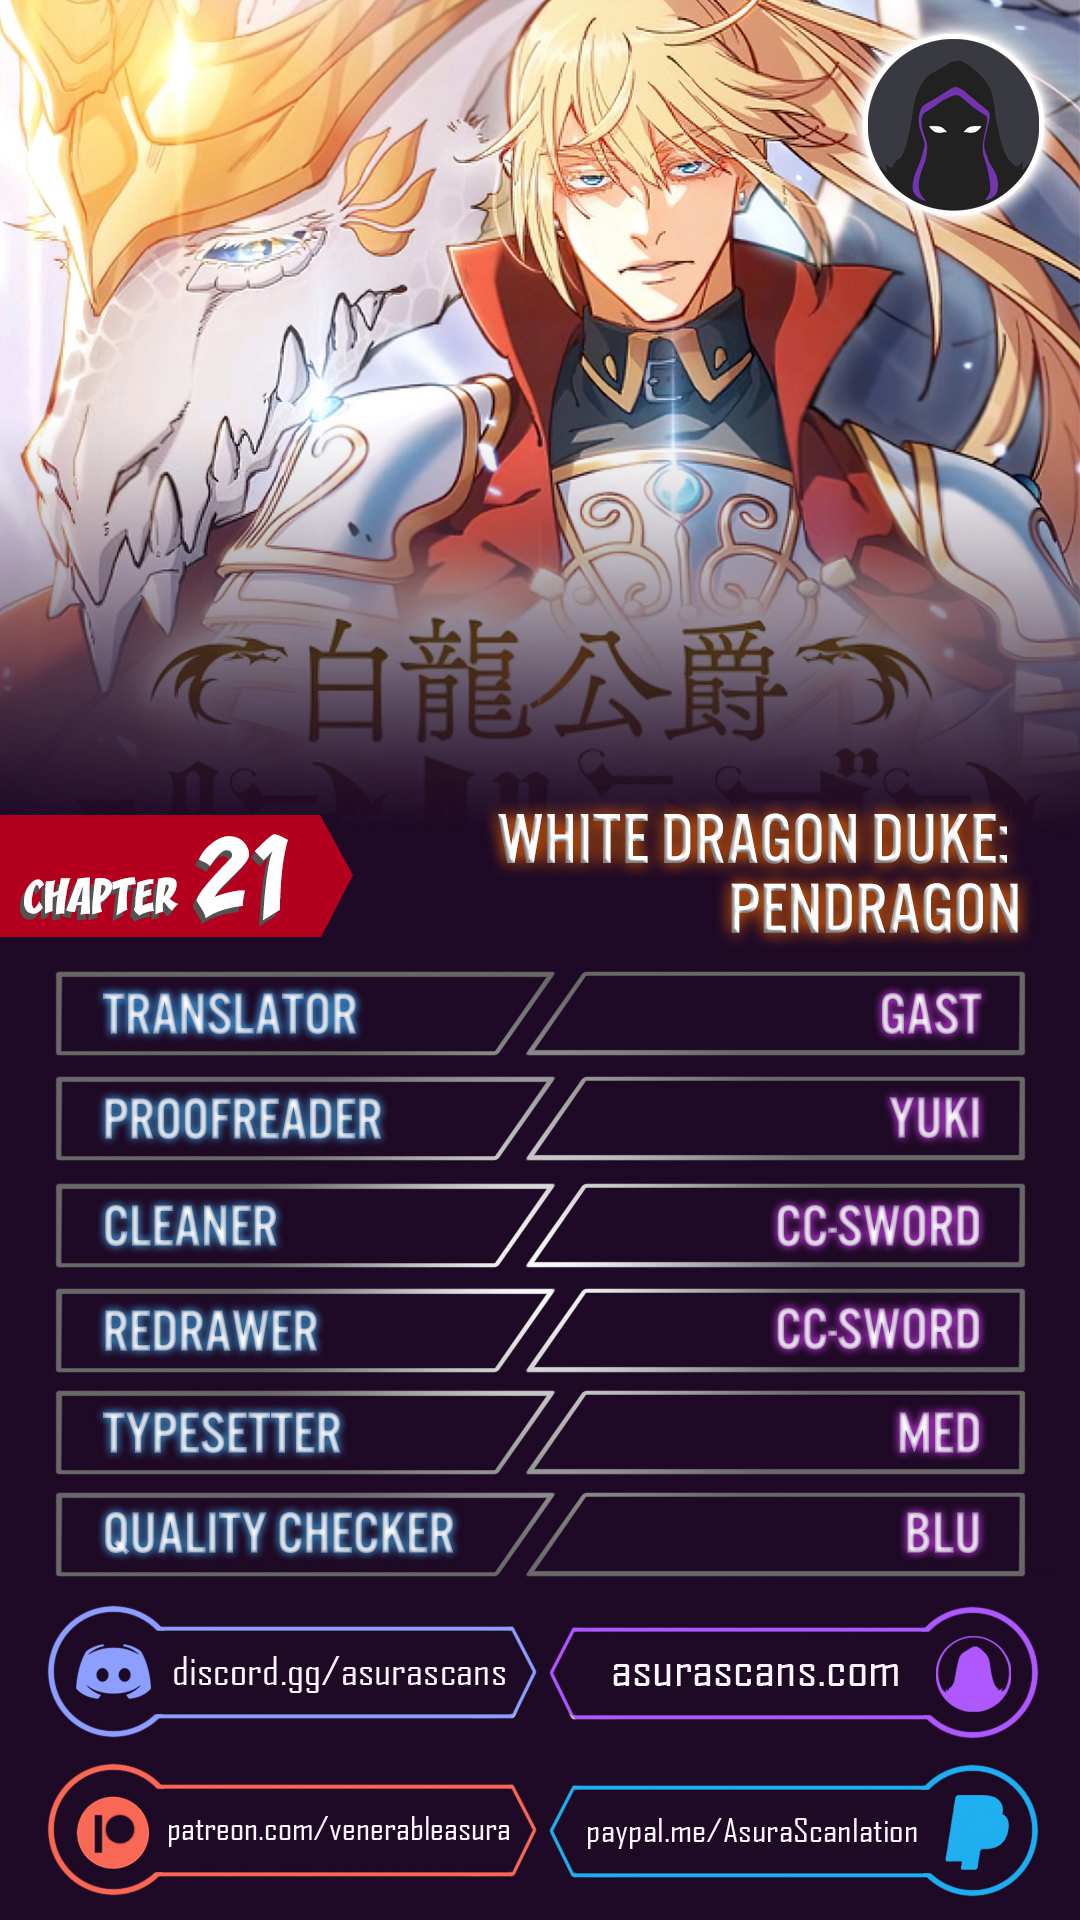 White Dragon Duke: Pendragon chapter 21 page 1